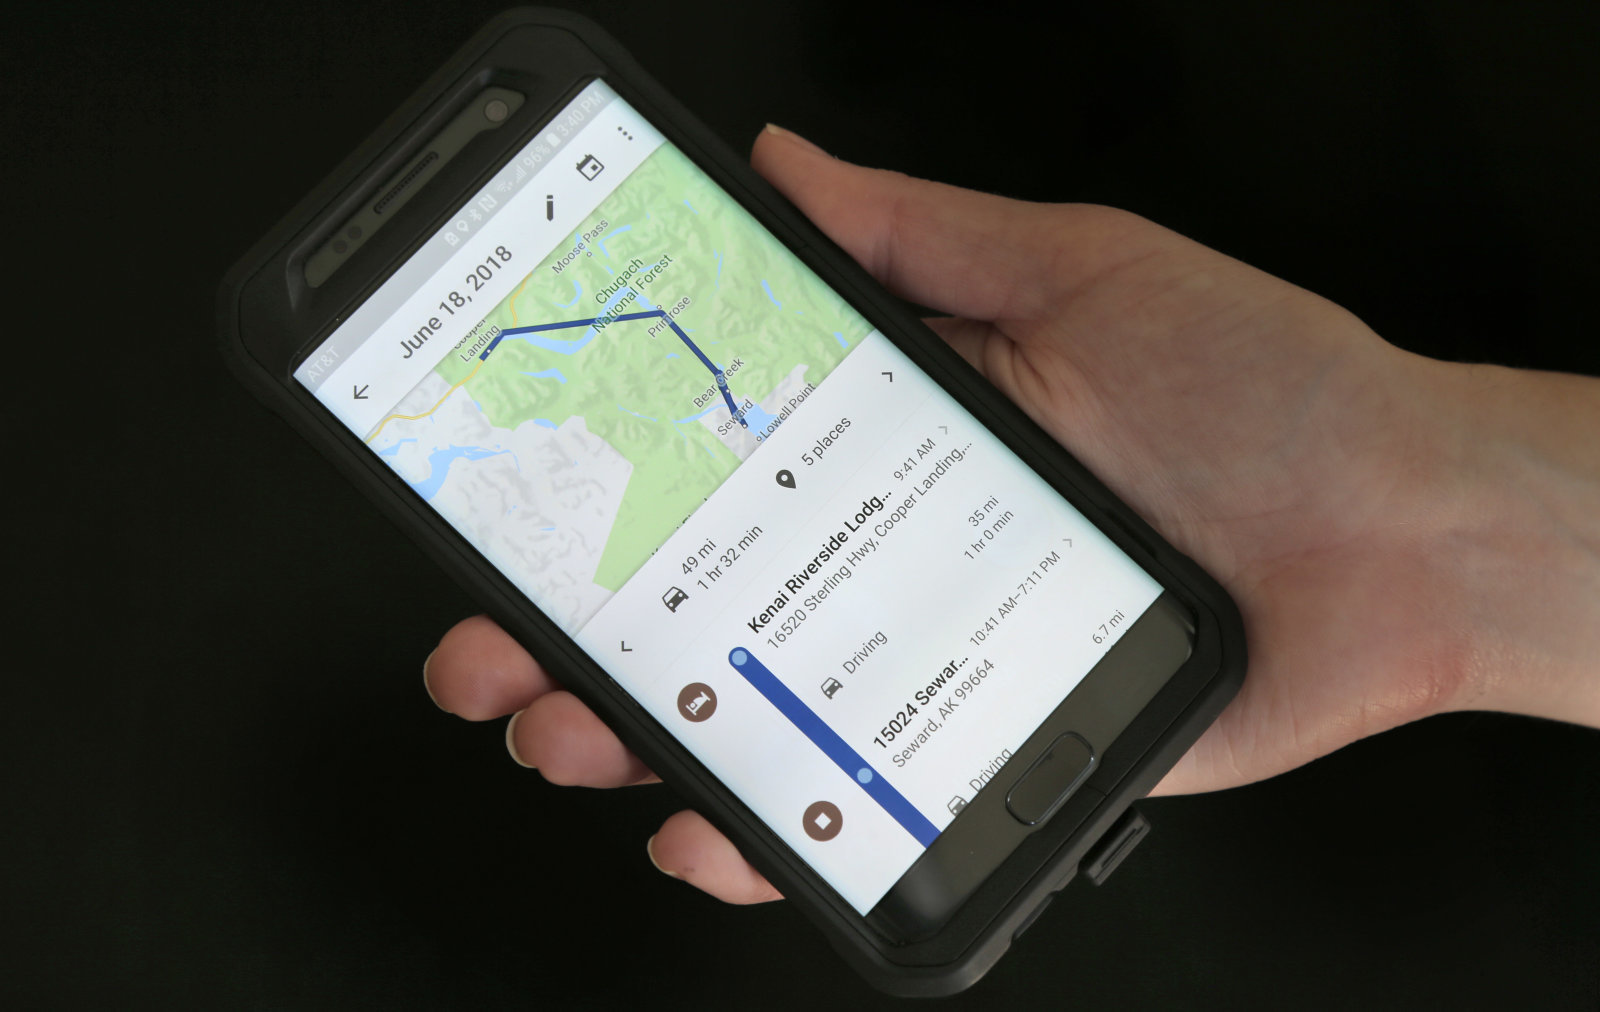 Google Maps bắt đầu
cập nhật chế độ Ẩn danh trên nền tảng Android